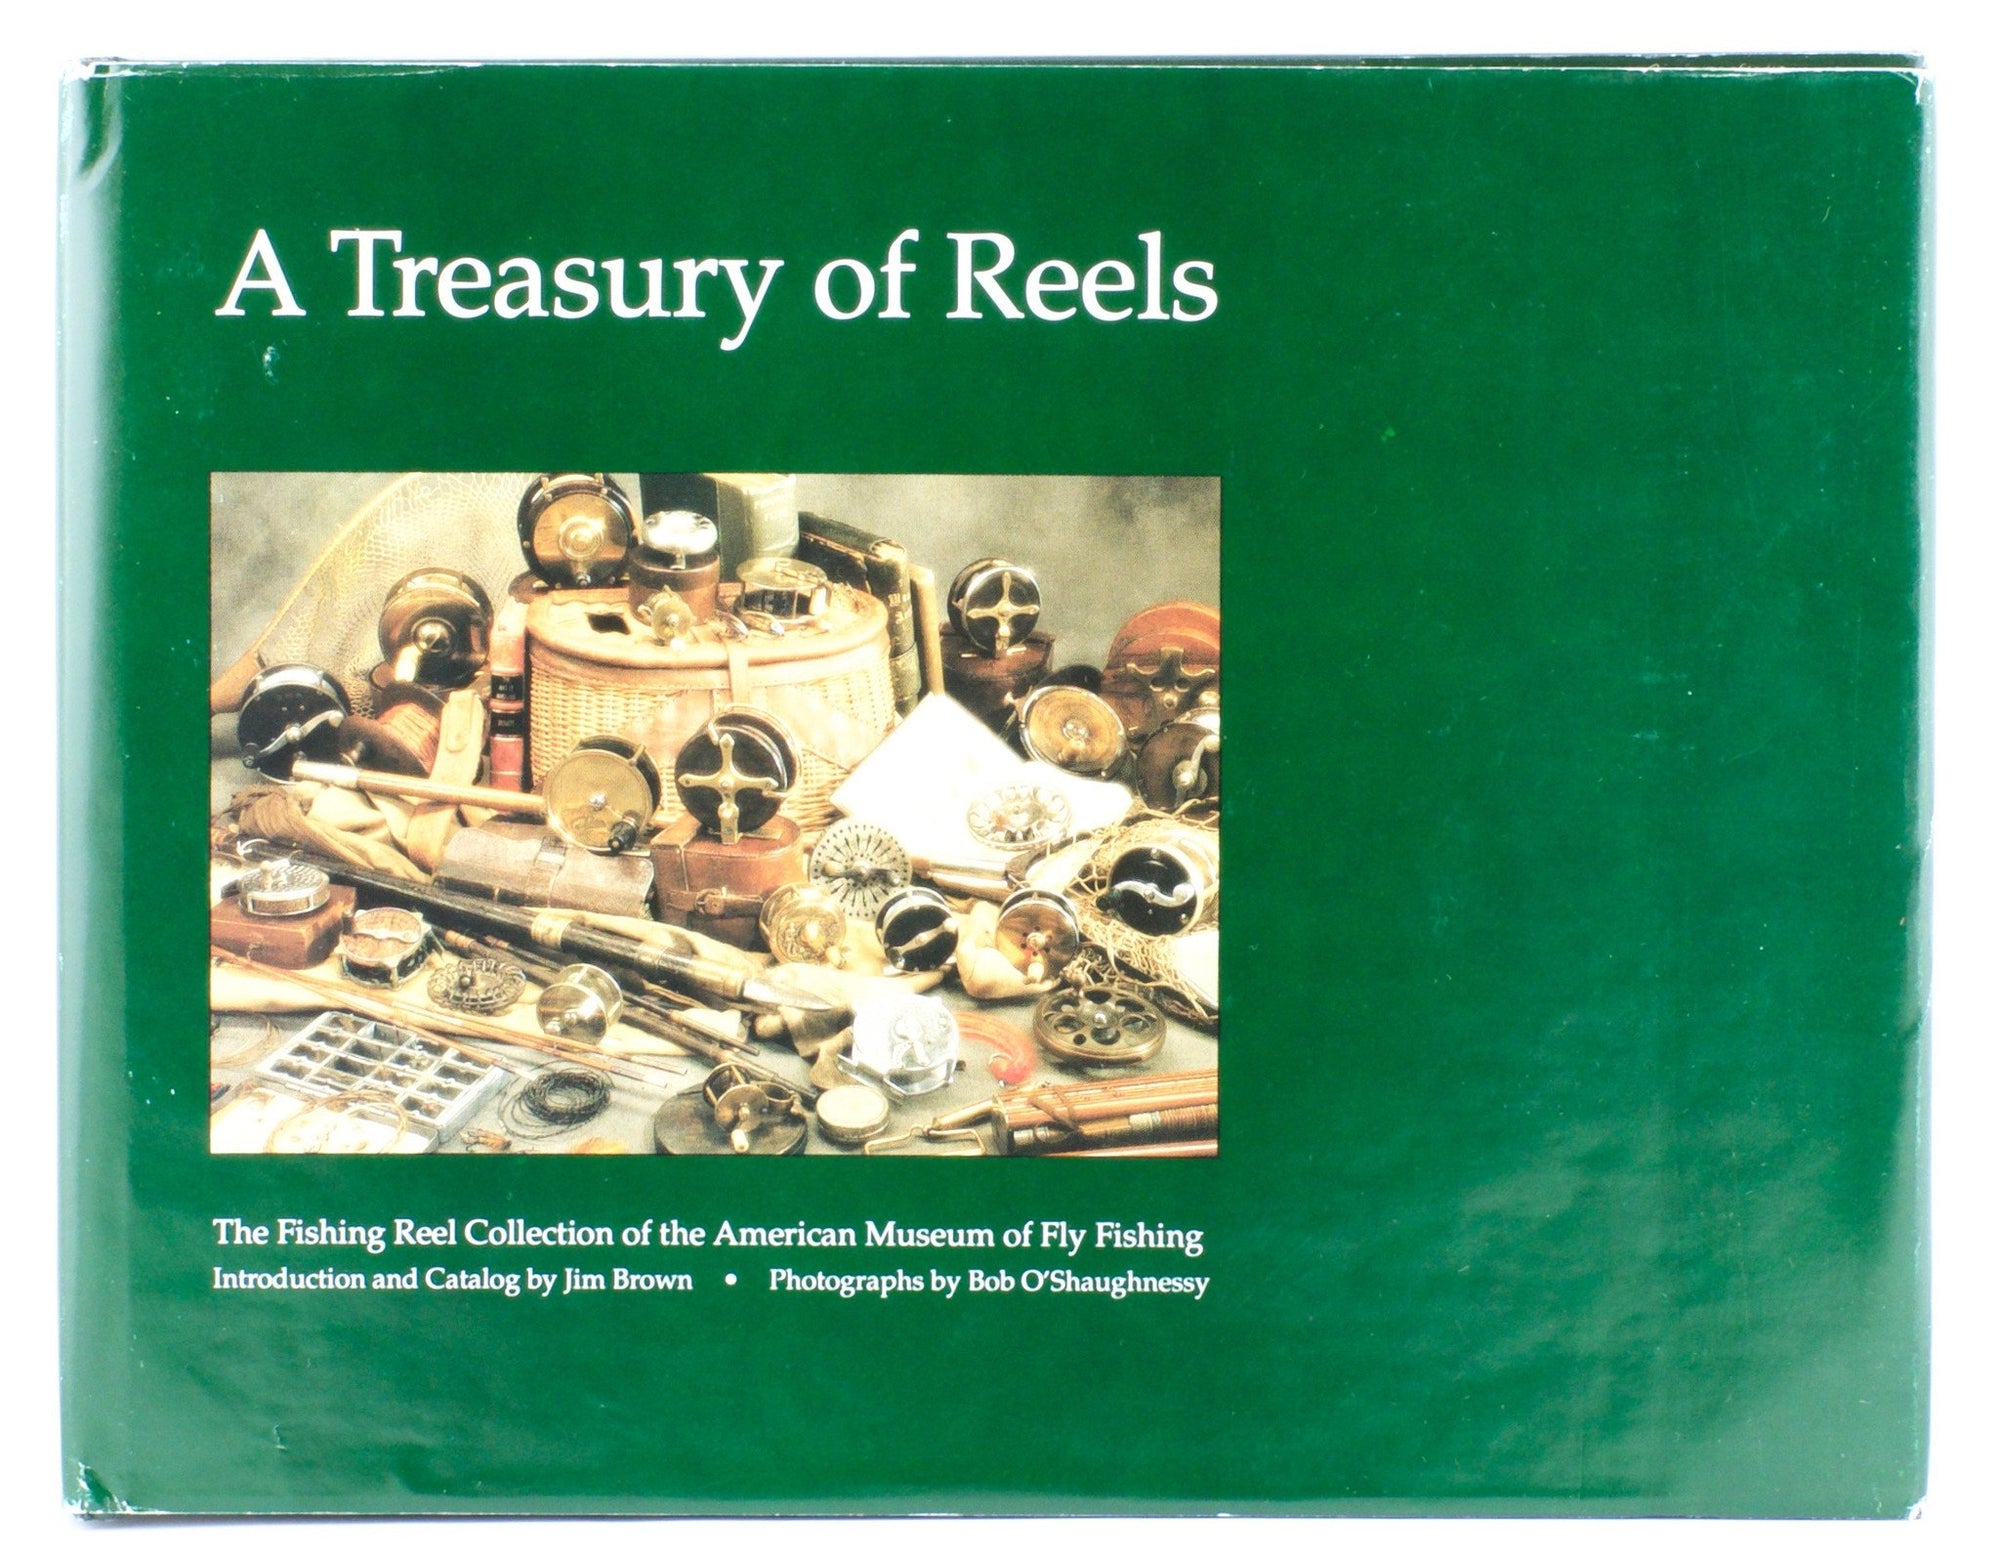 Brown, Jim - "A Treasury of Reels" 